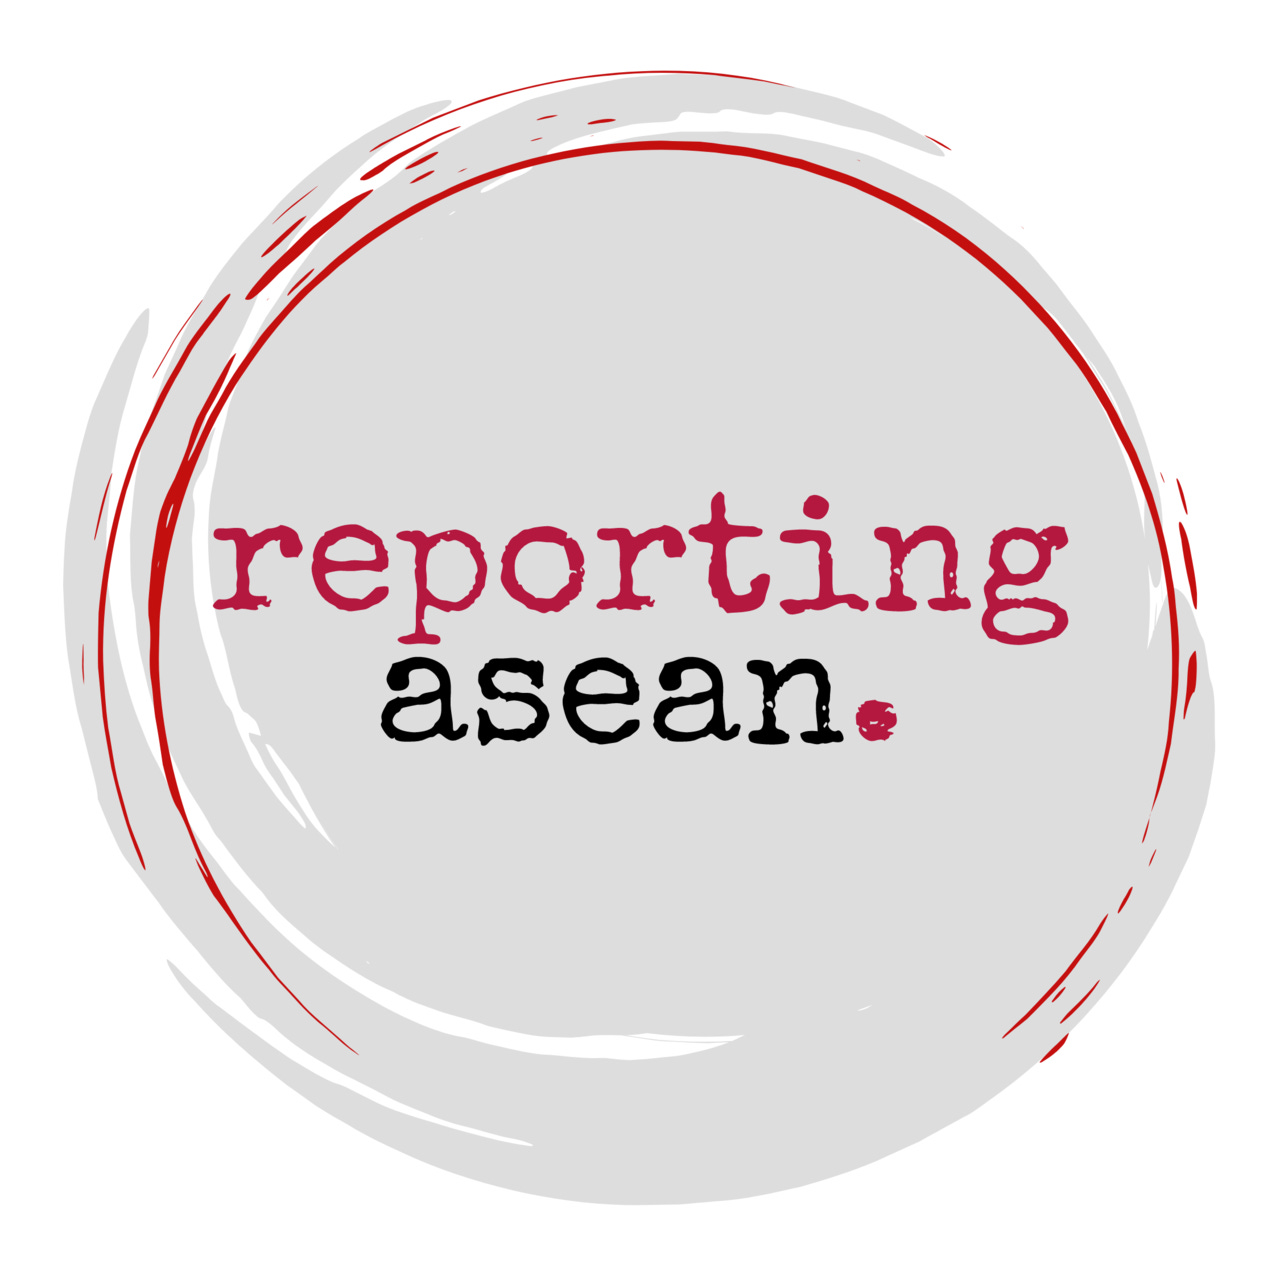 Reporting Asean